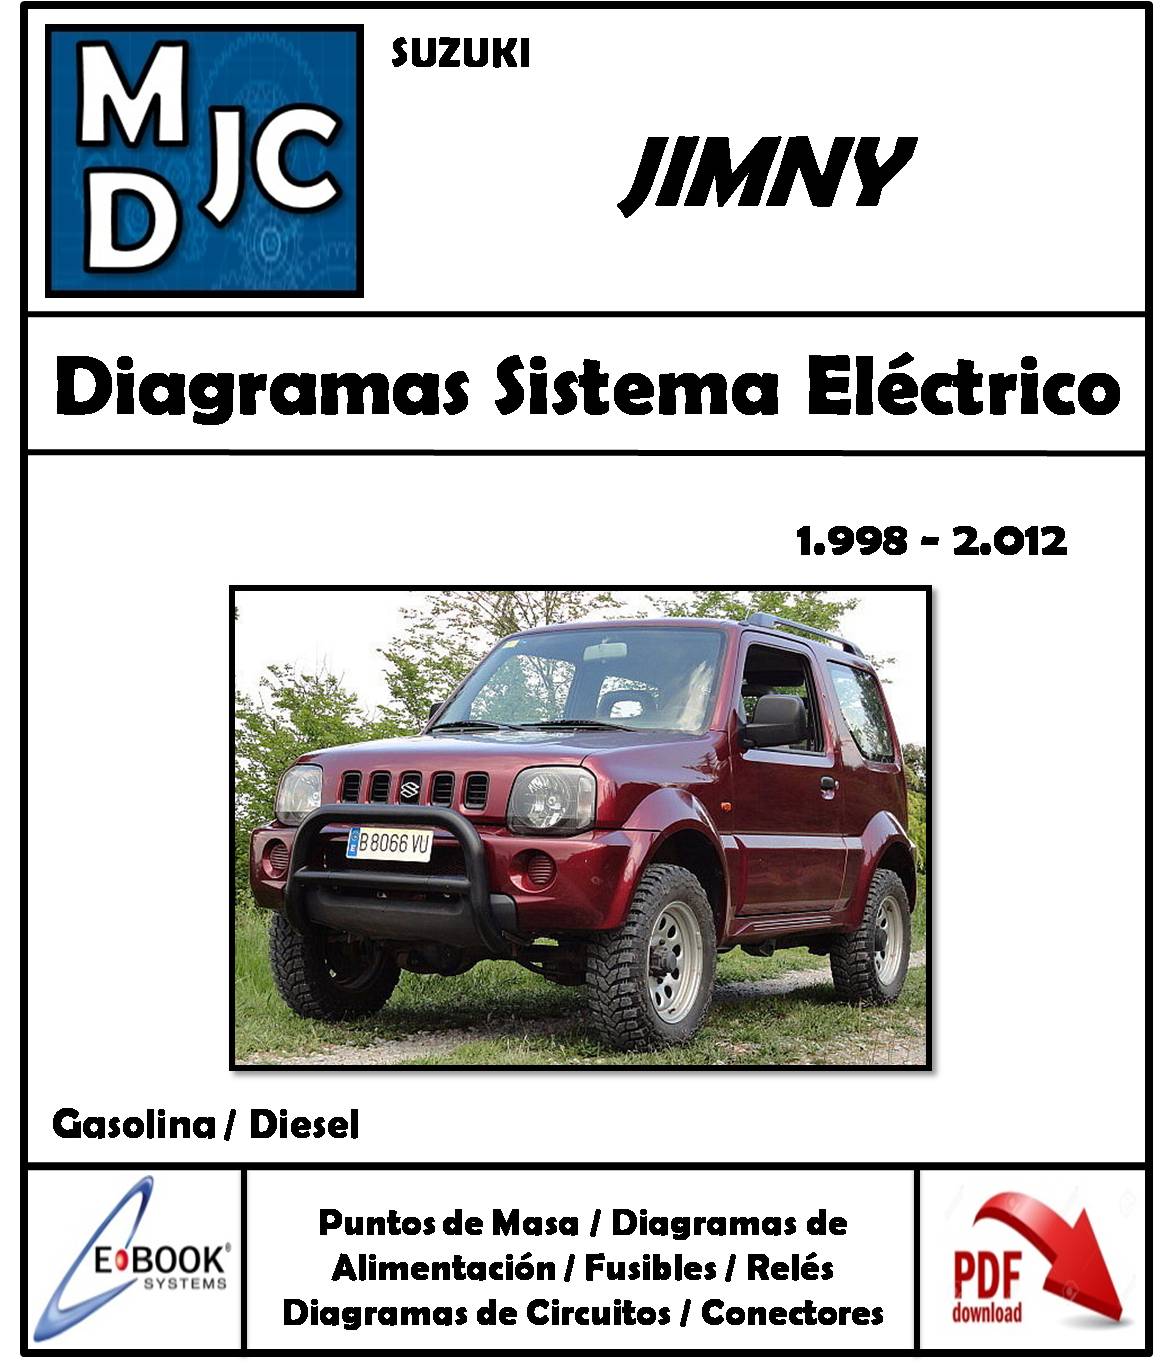 Chevrolet Suzuki Jimny 1998 - 2012